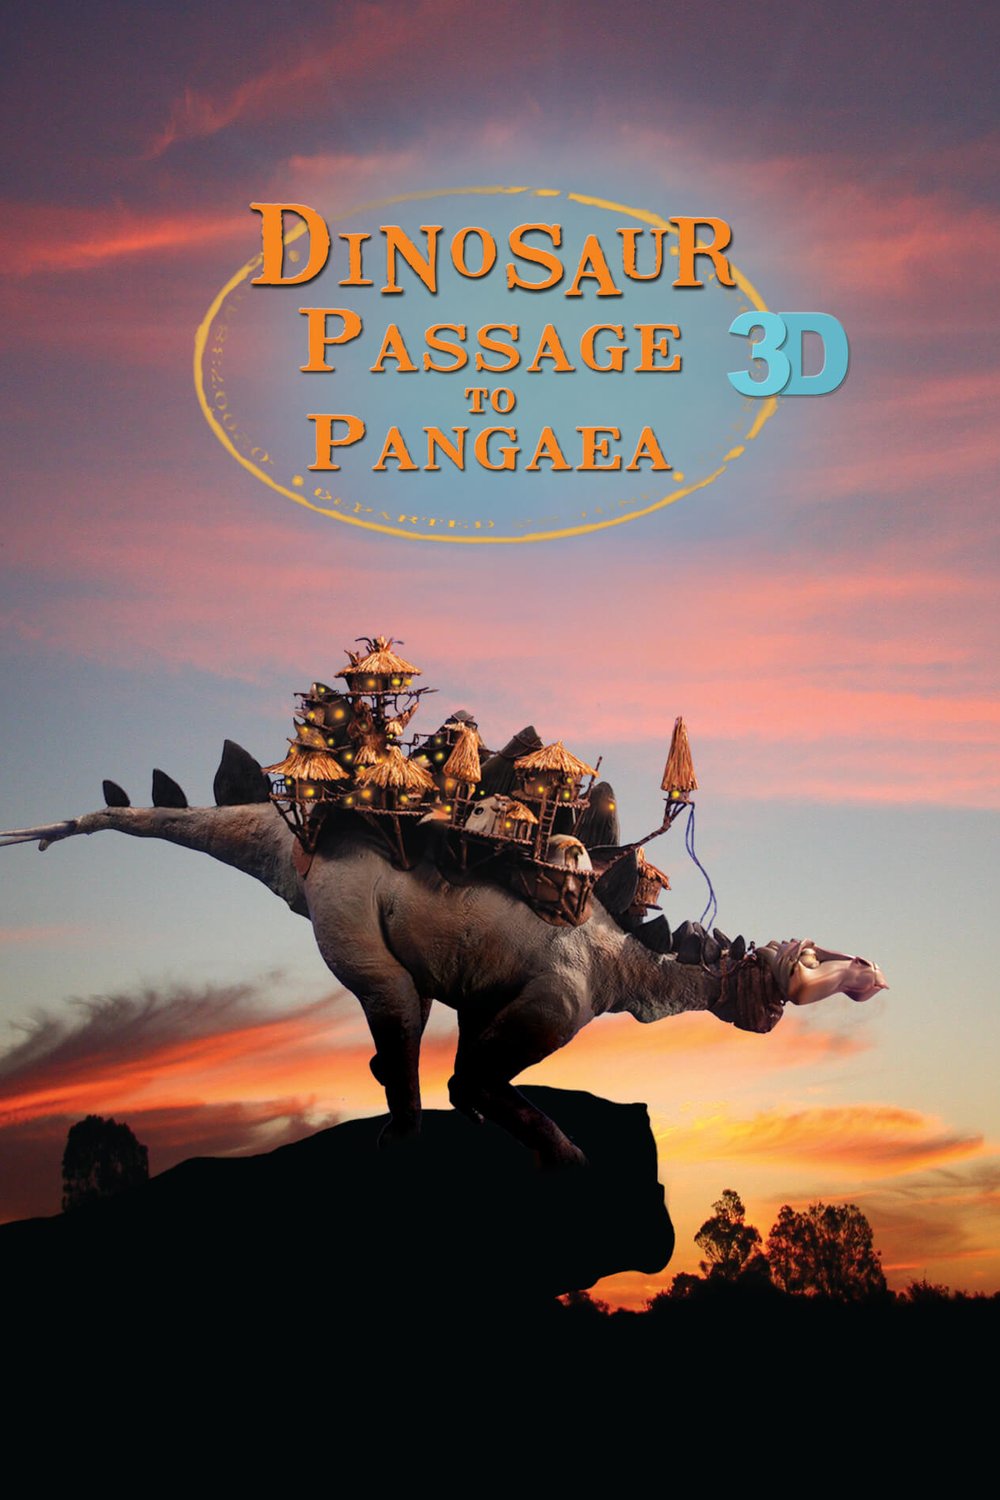 Poster of the movie Dinosaur Passage to Pangaea